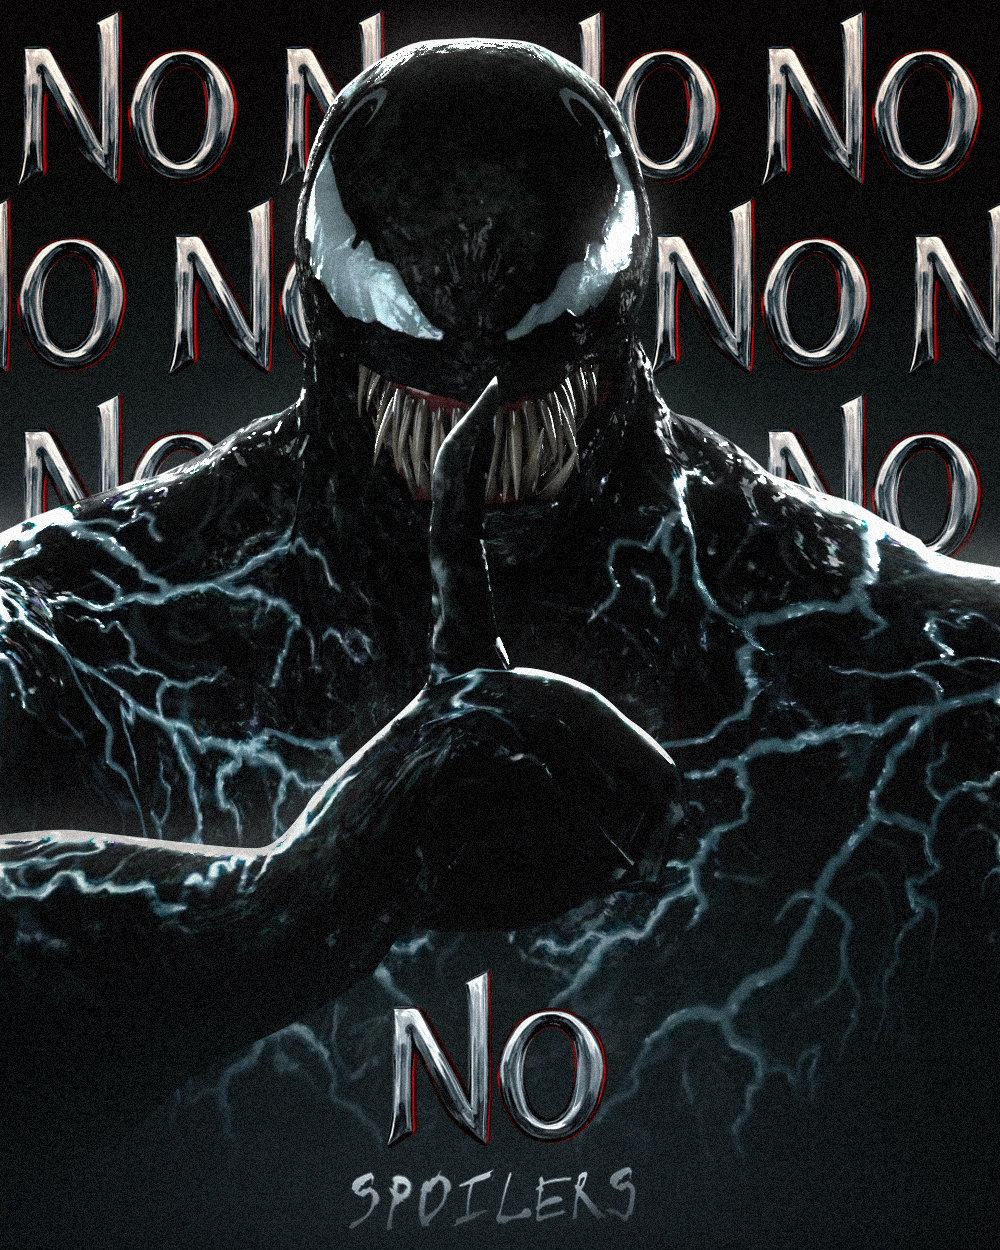 Venom recomienda no hacer spoilers